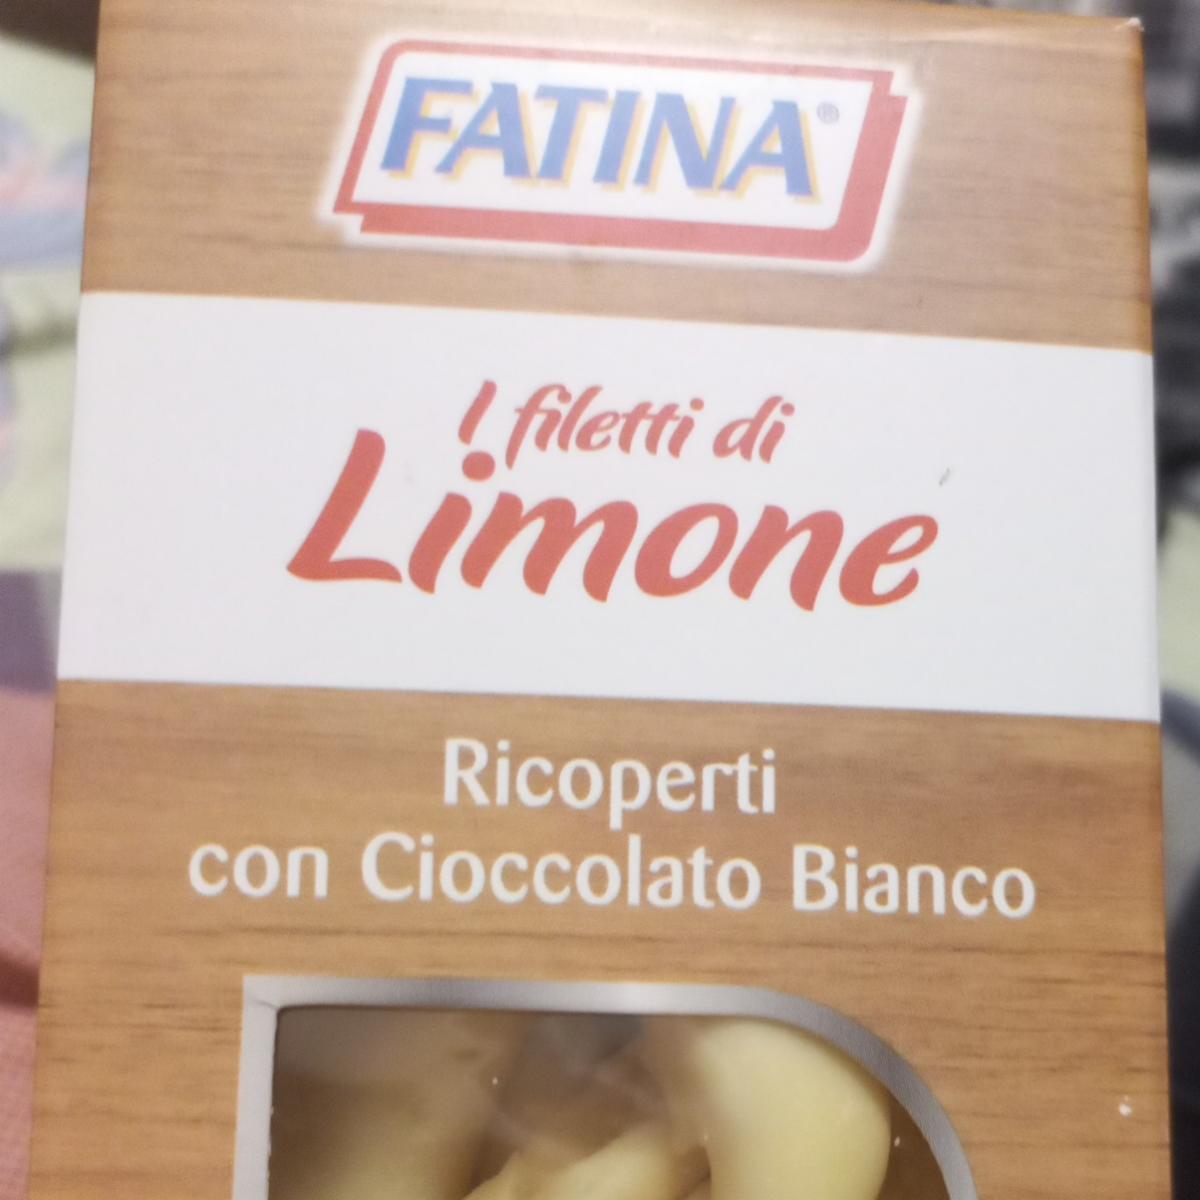 Фото - лимон в белом шоколаде Fatina